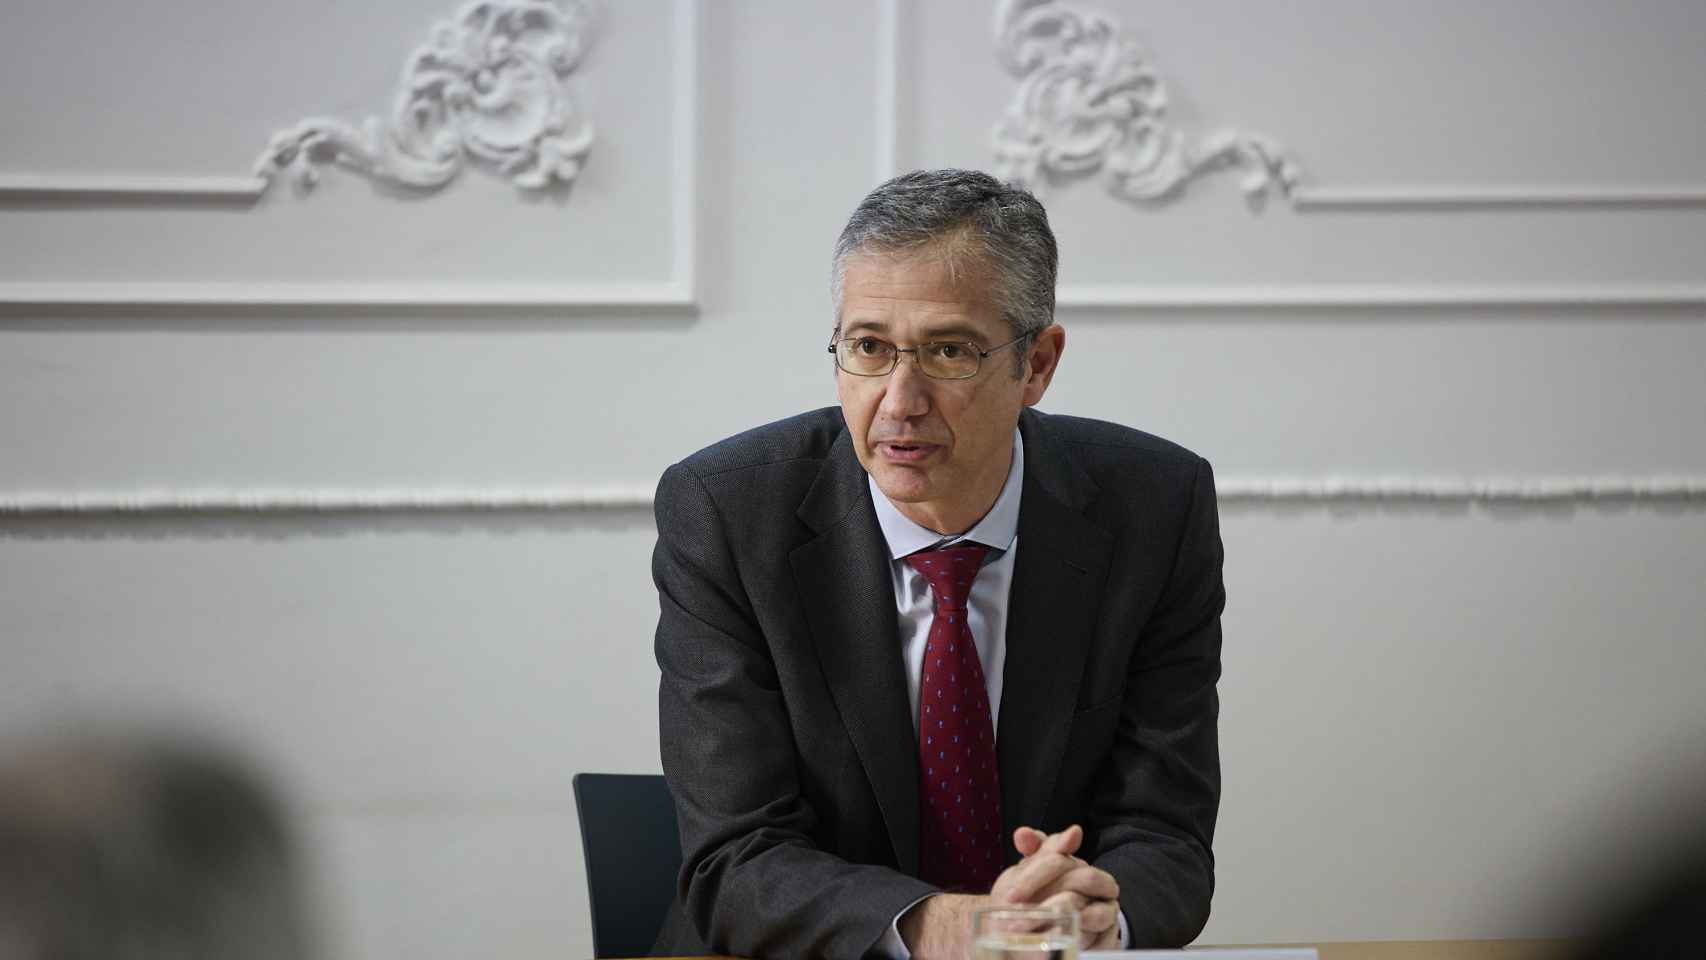 El gobernador del Banco de España, Pablo Hernández de Cos.